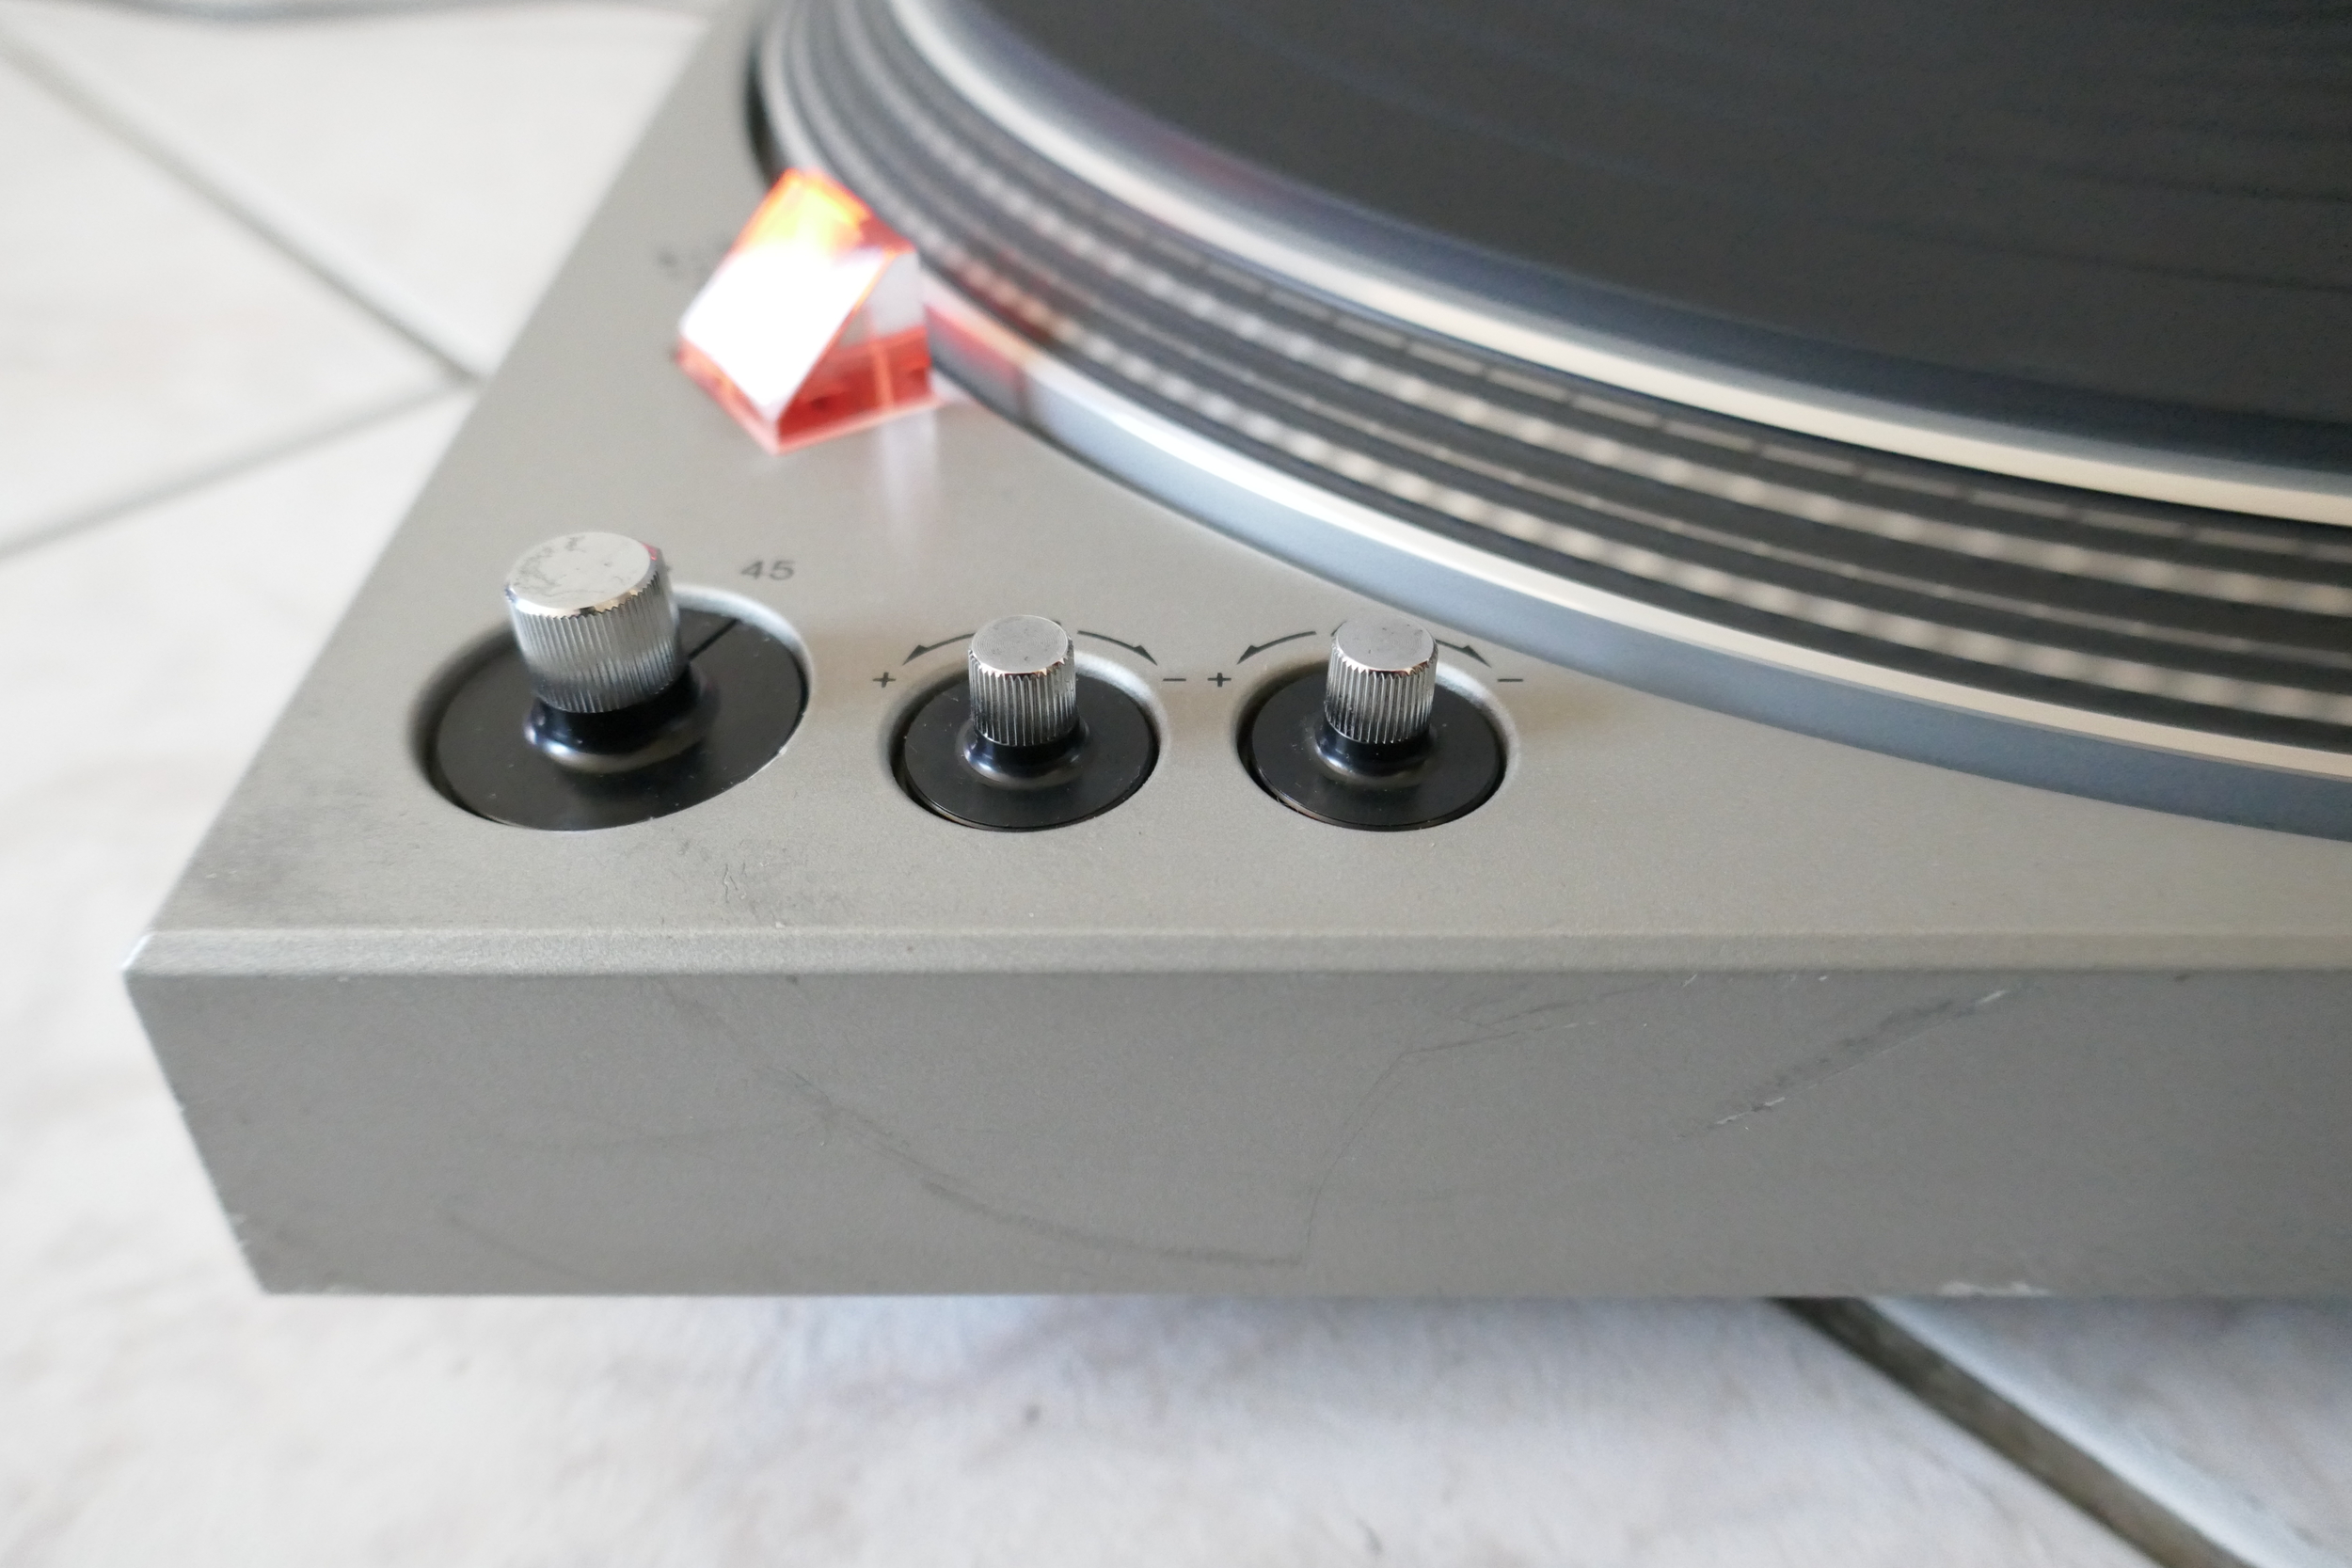 Platine tourne-disque semi-automatique TECHNICS SL1700 Vintage